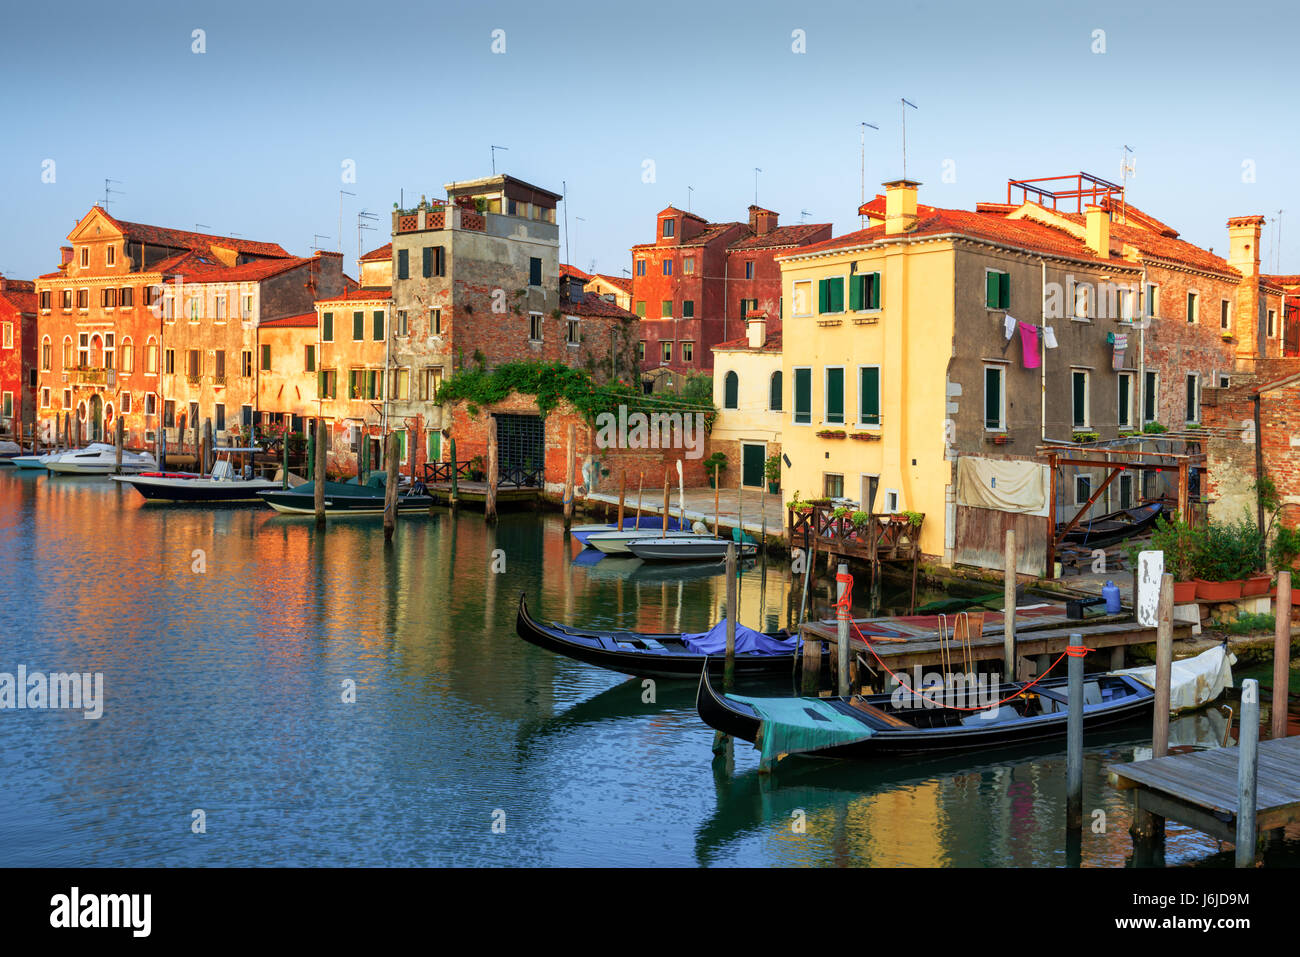 Vue imprenable sur matin Venise. Rangée de bateaux et de maisons colorées. L'Italie, l'Europe Banque D'Images